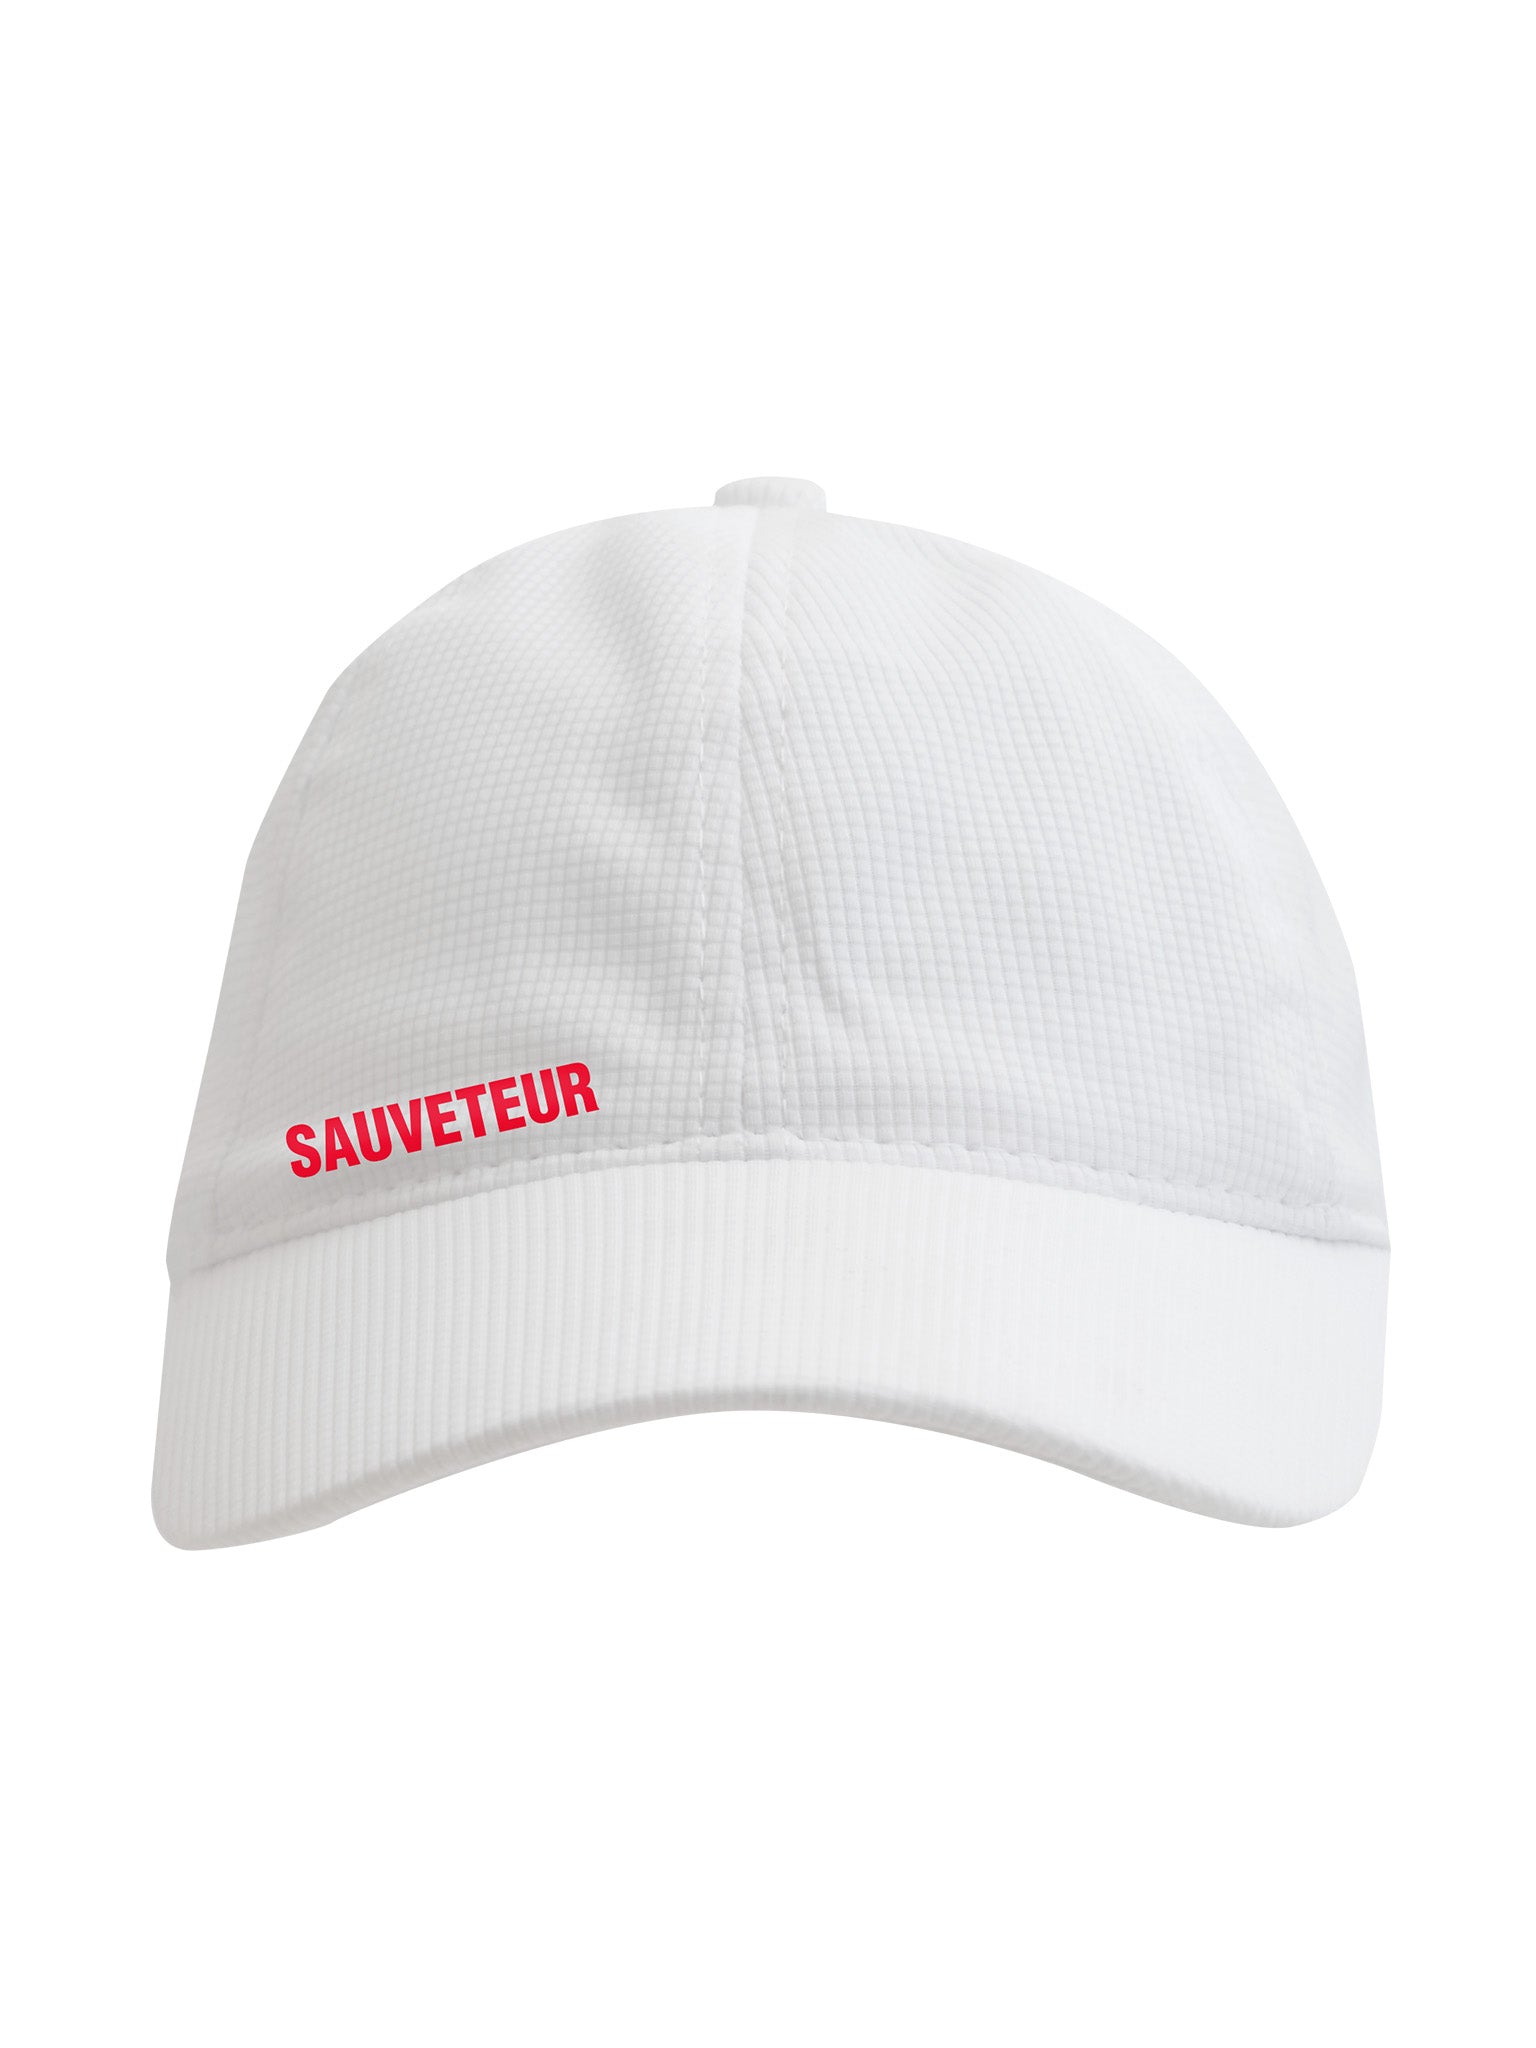 Technical Cap Sauveteur - White